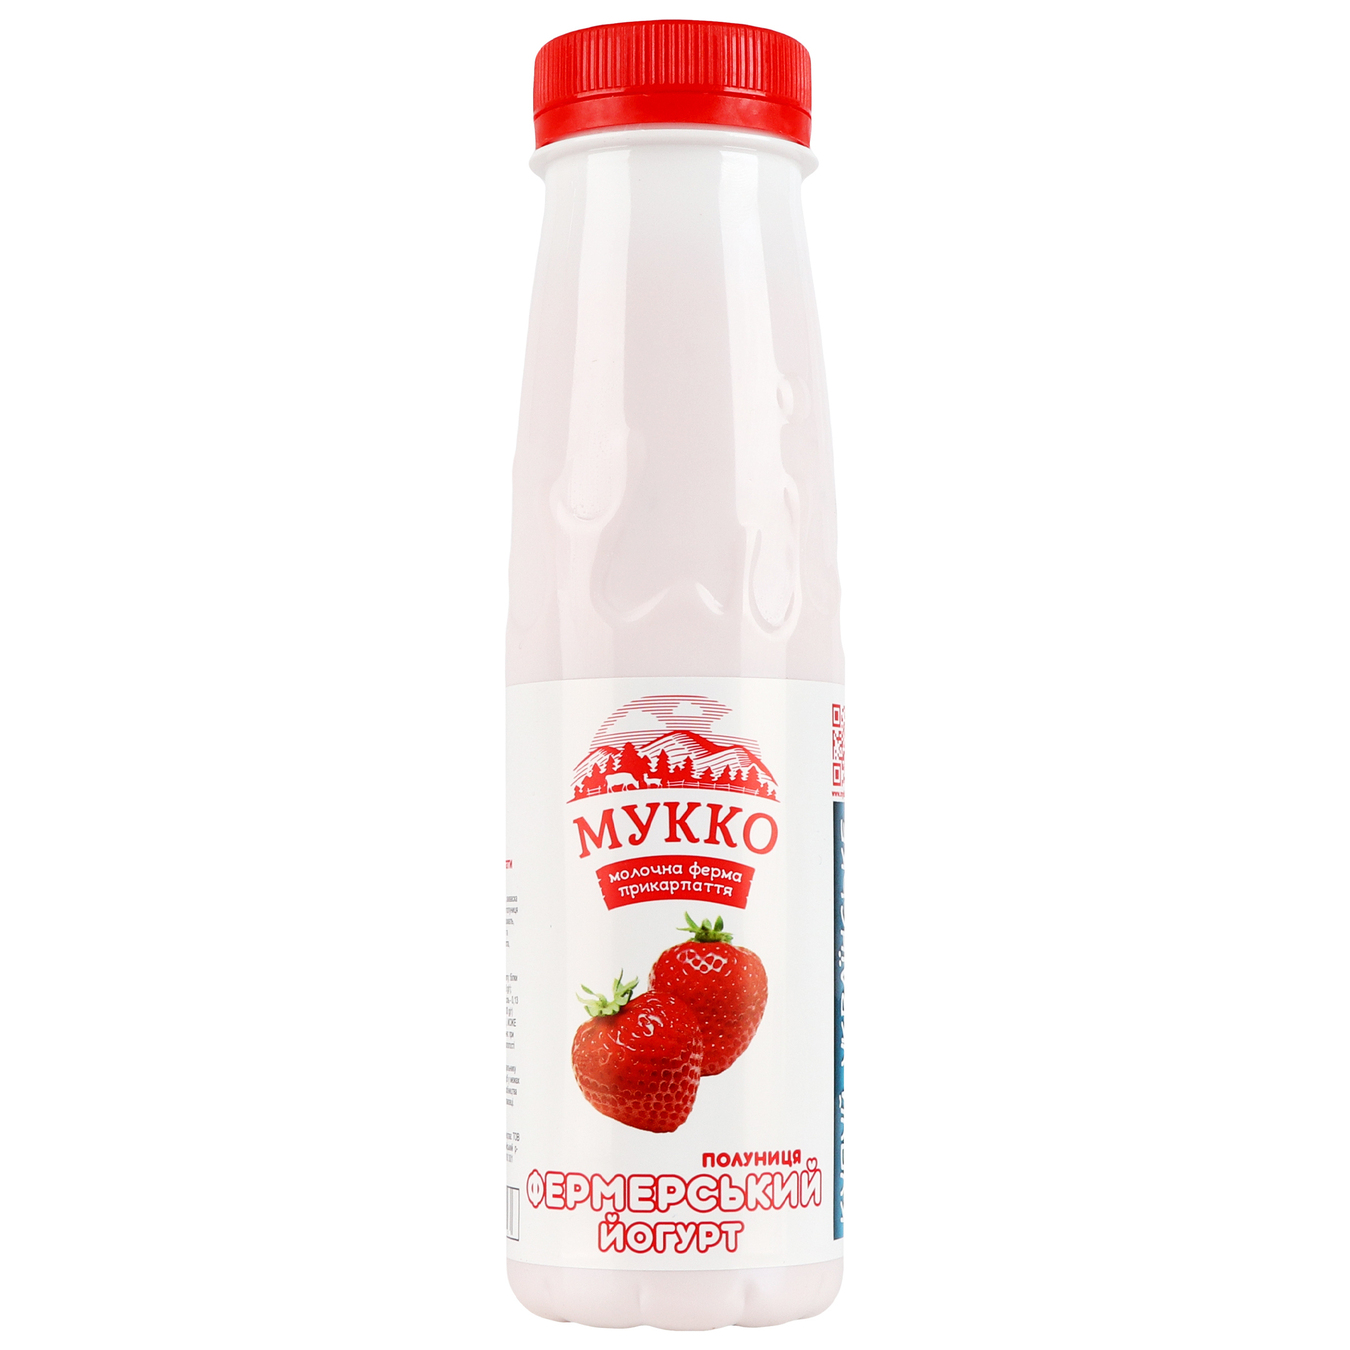 Yogurt Mukko strawberry 3.7% 250g bottle